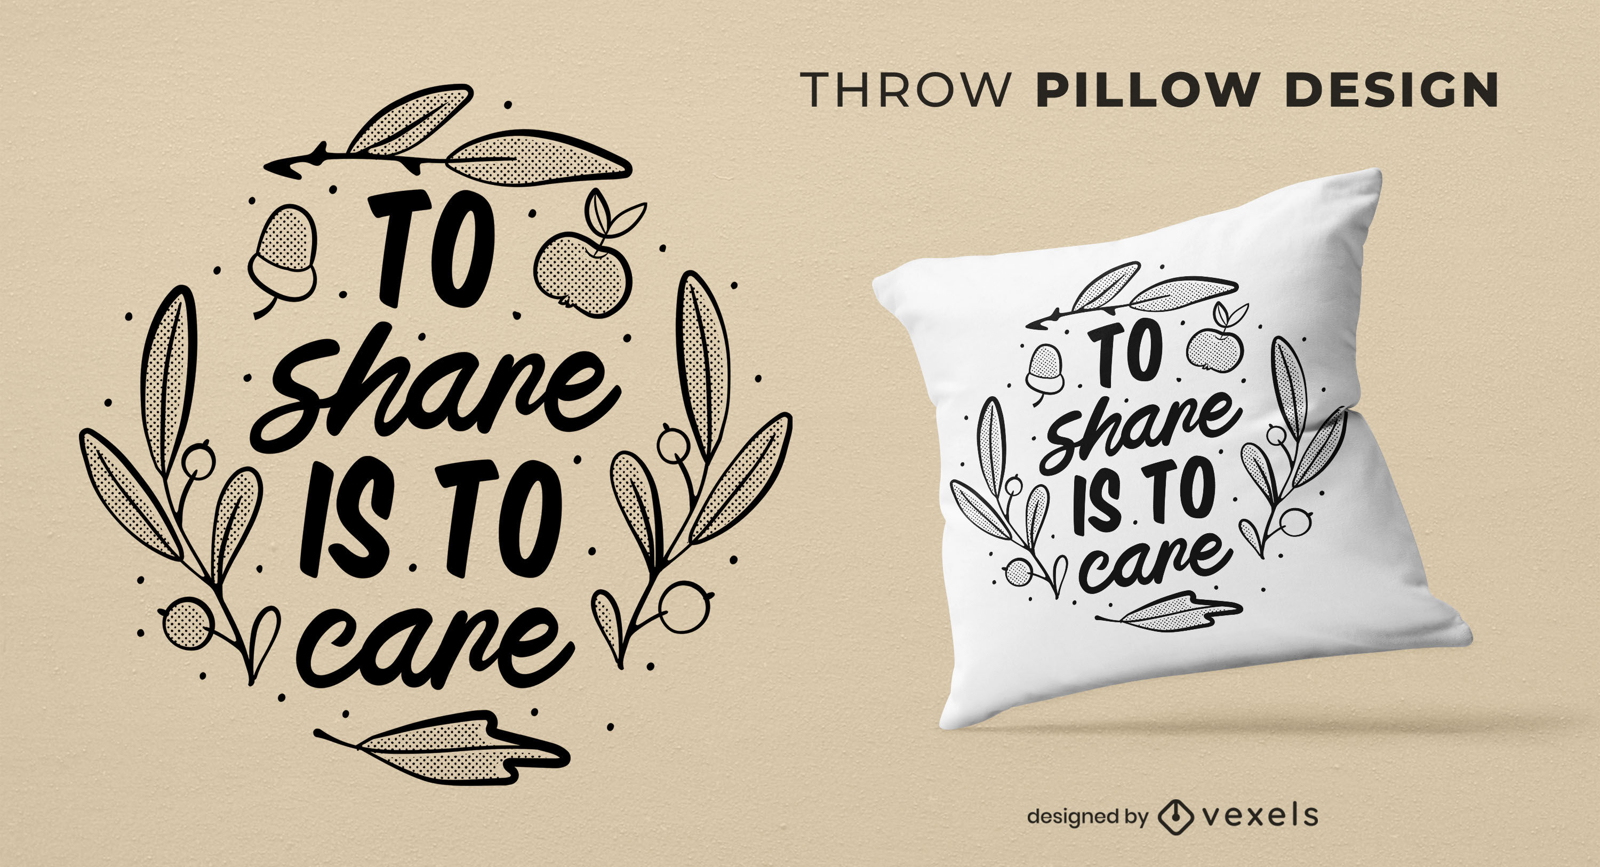 Compartir es cuidar el dise?o de la almohada.